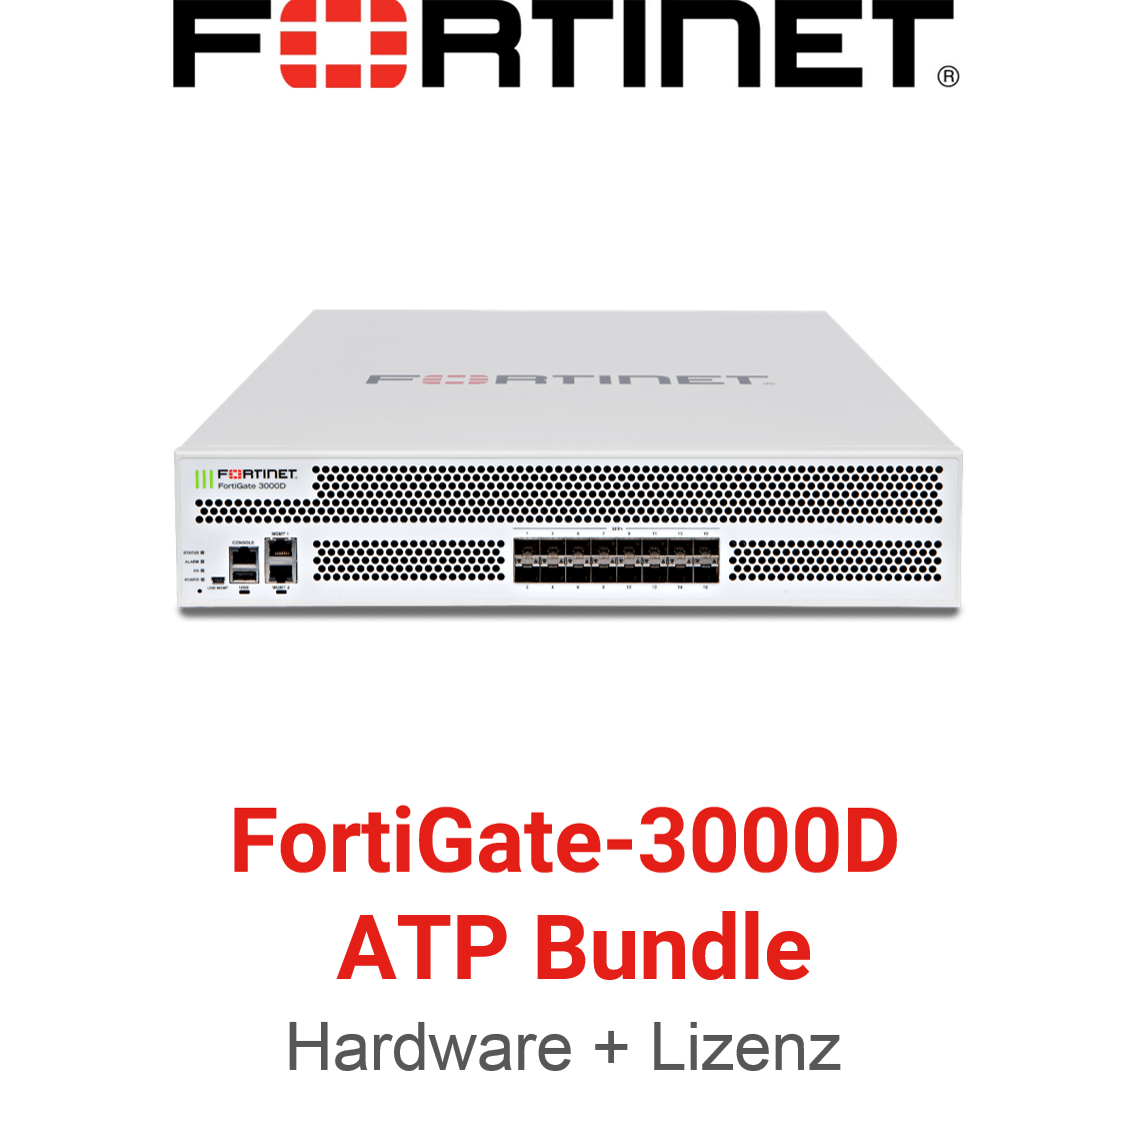 Fortinet FortiGate-3000D - ATP Bundle (Hardware + Lizenz)